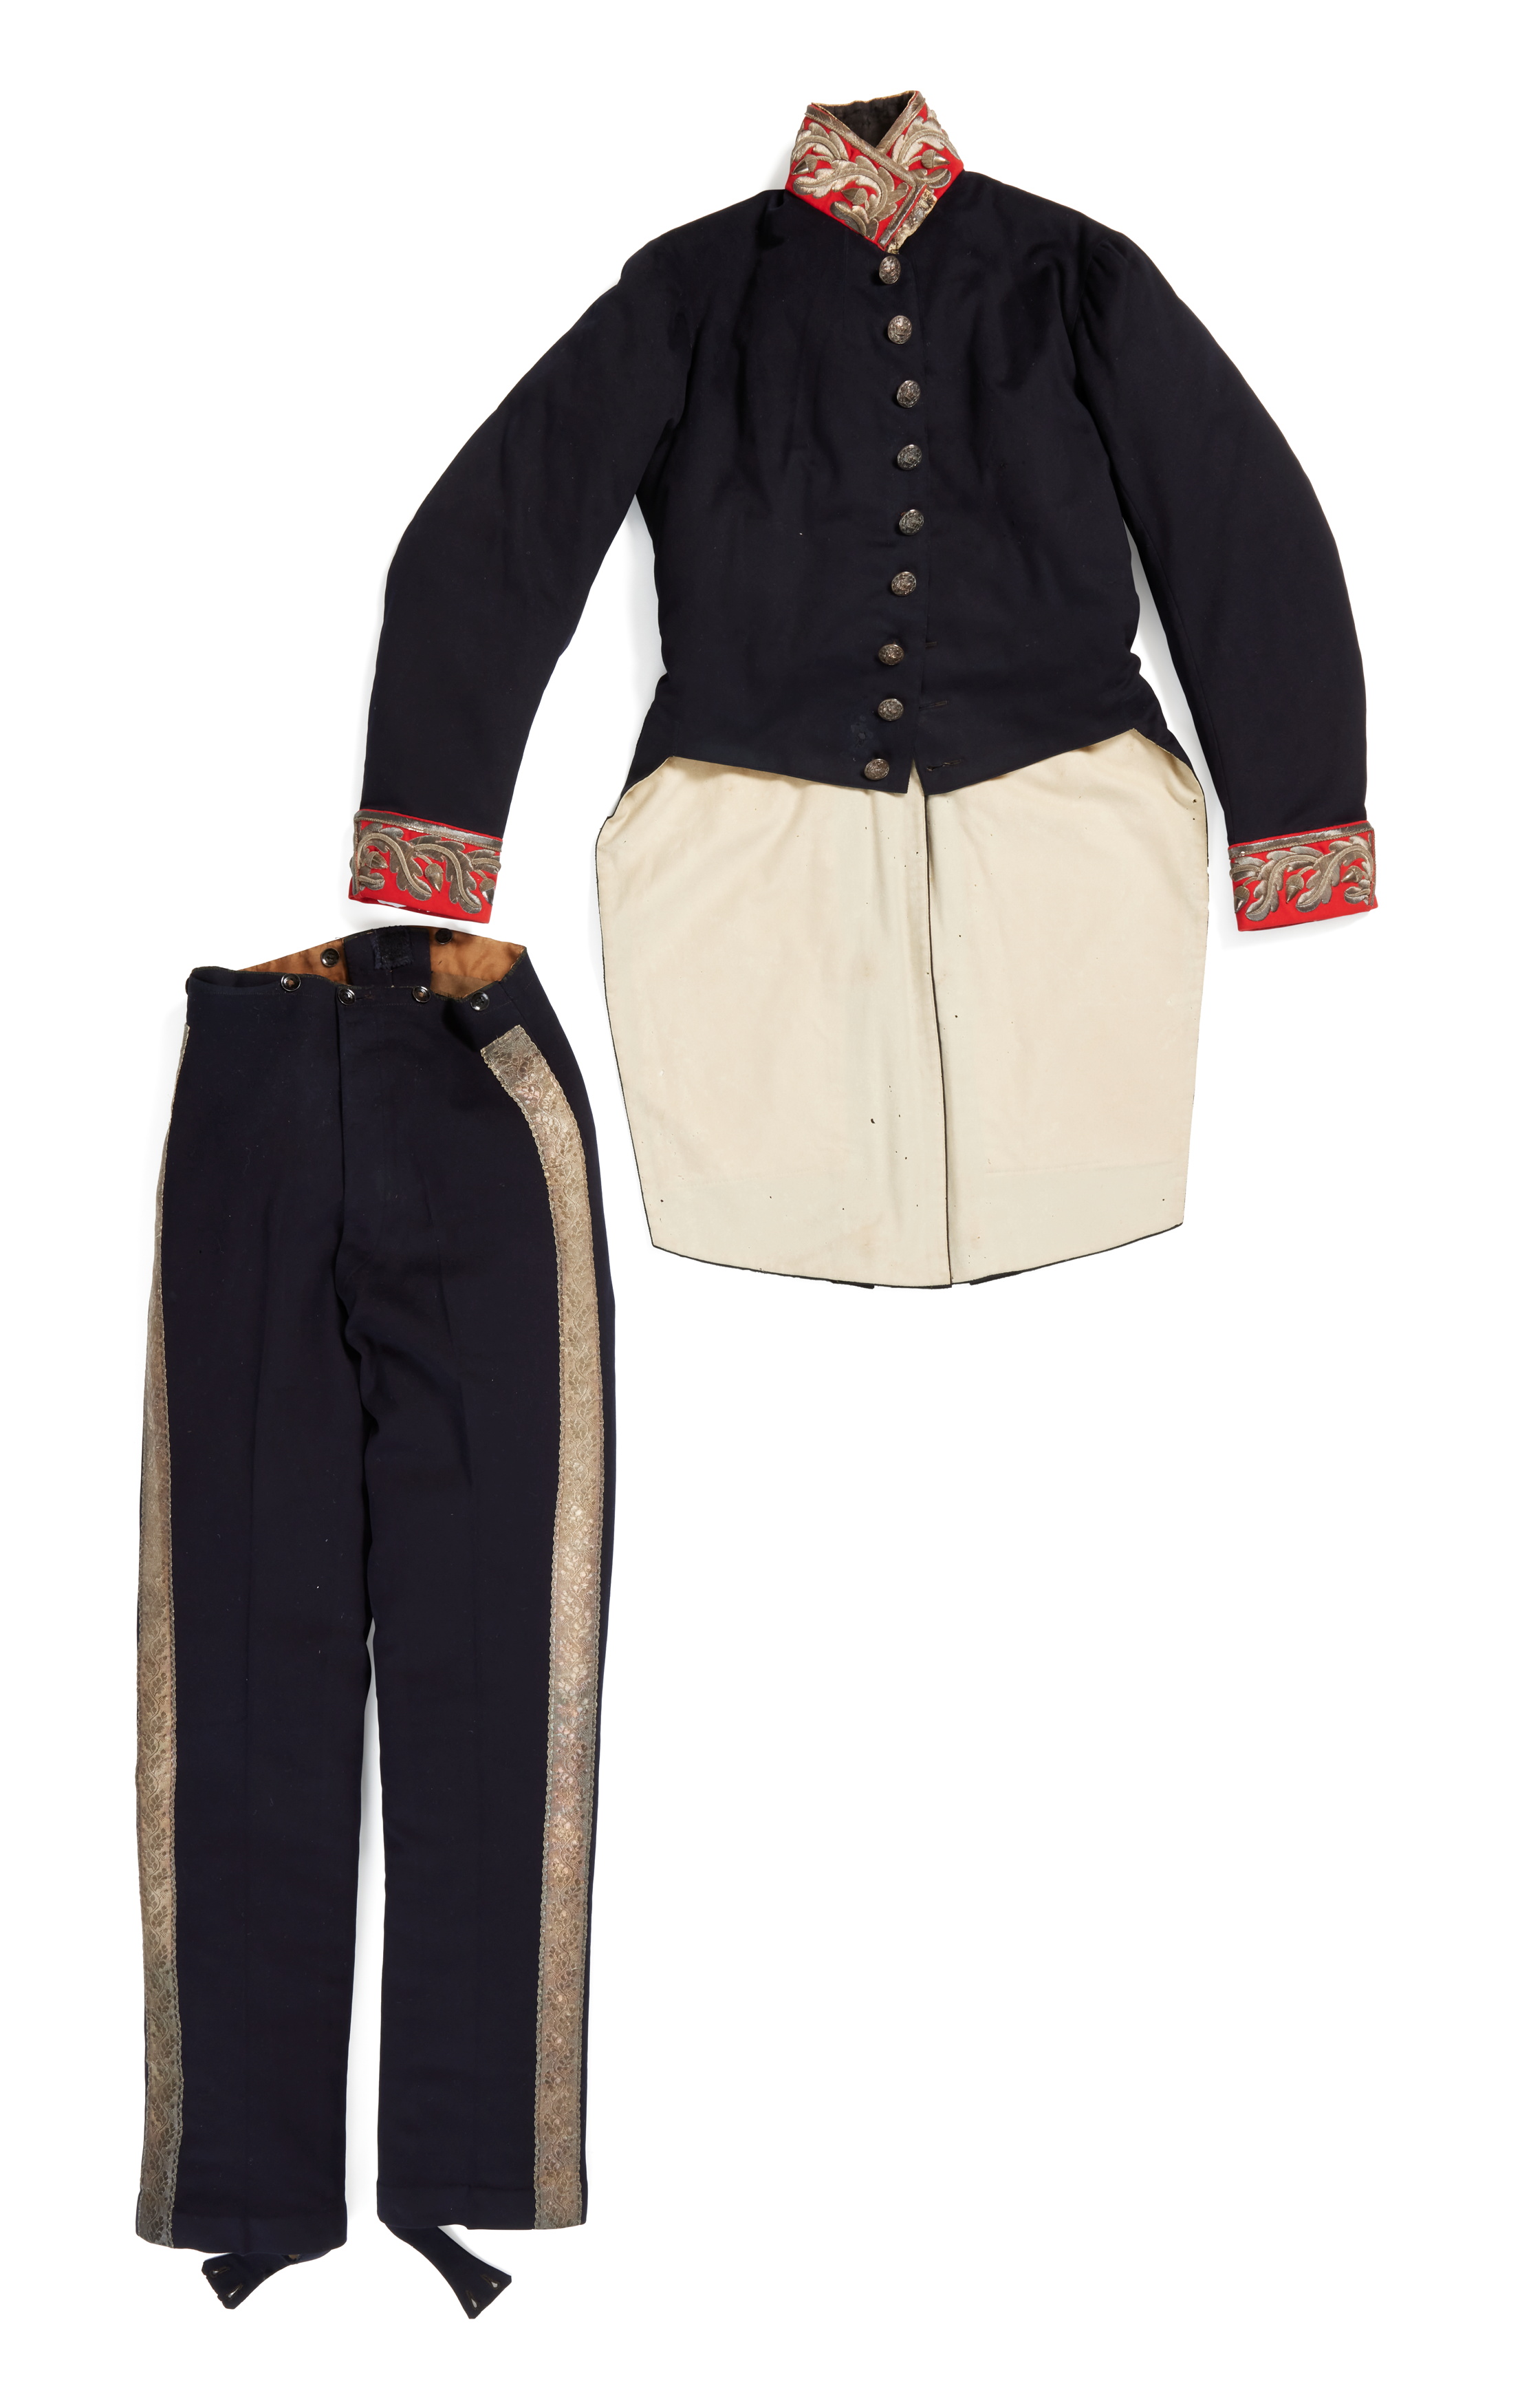 Uniform worn by Sir Edward Deas Thomson as Colonial Secretary of New South Wales